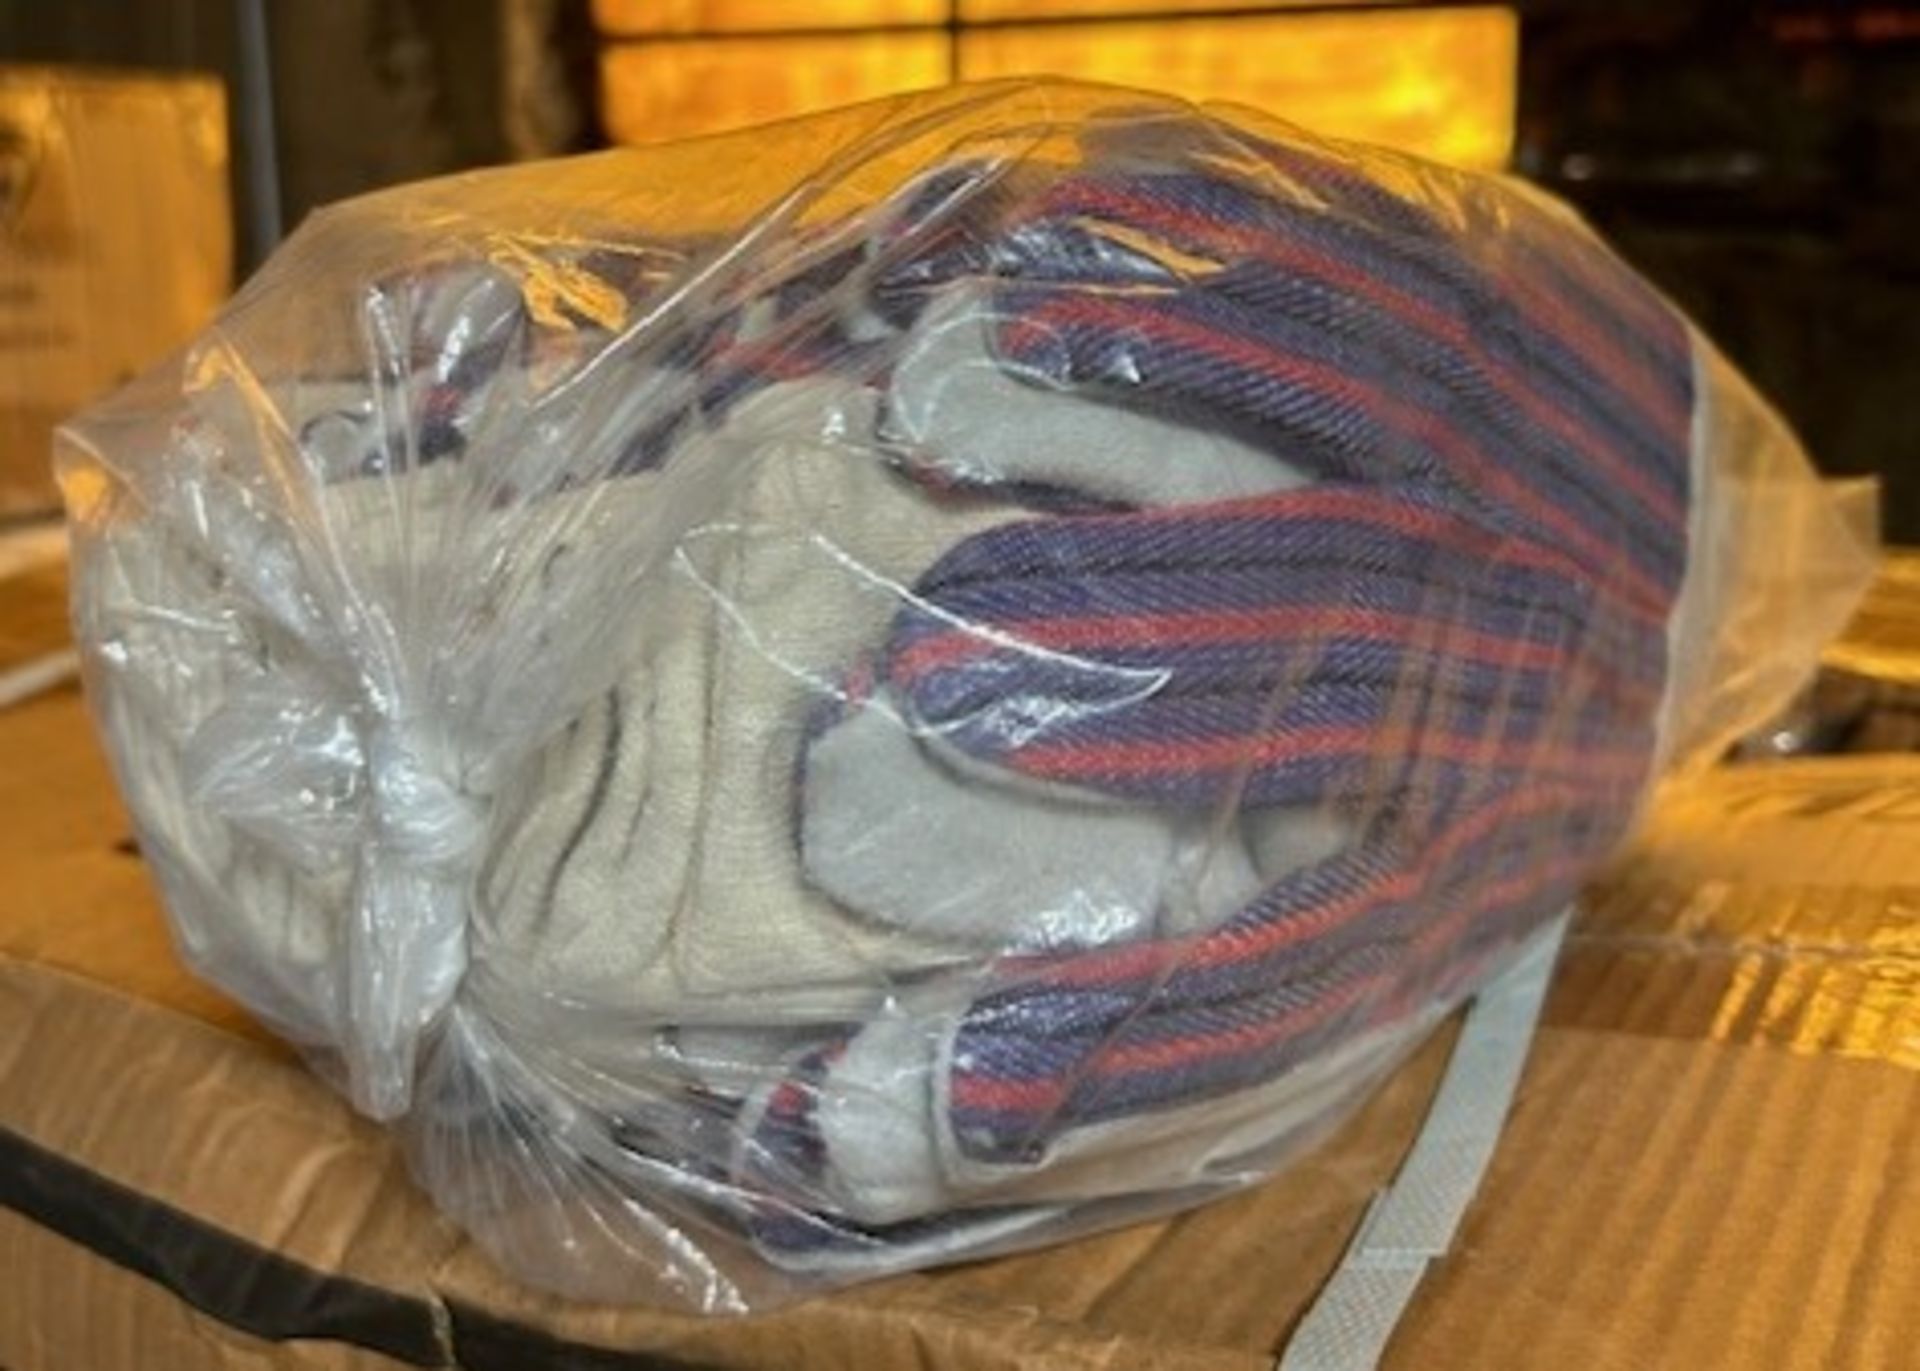 (20) Dozen - 86-4104 Leather Palm Work Gloves